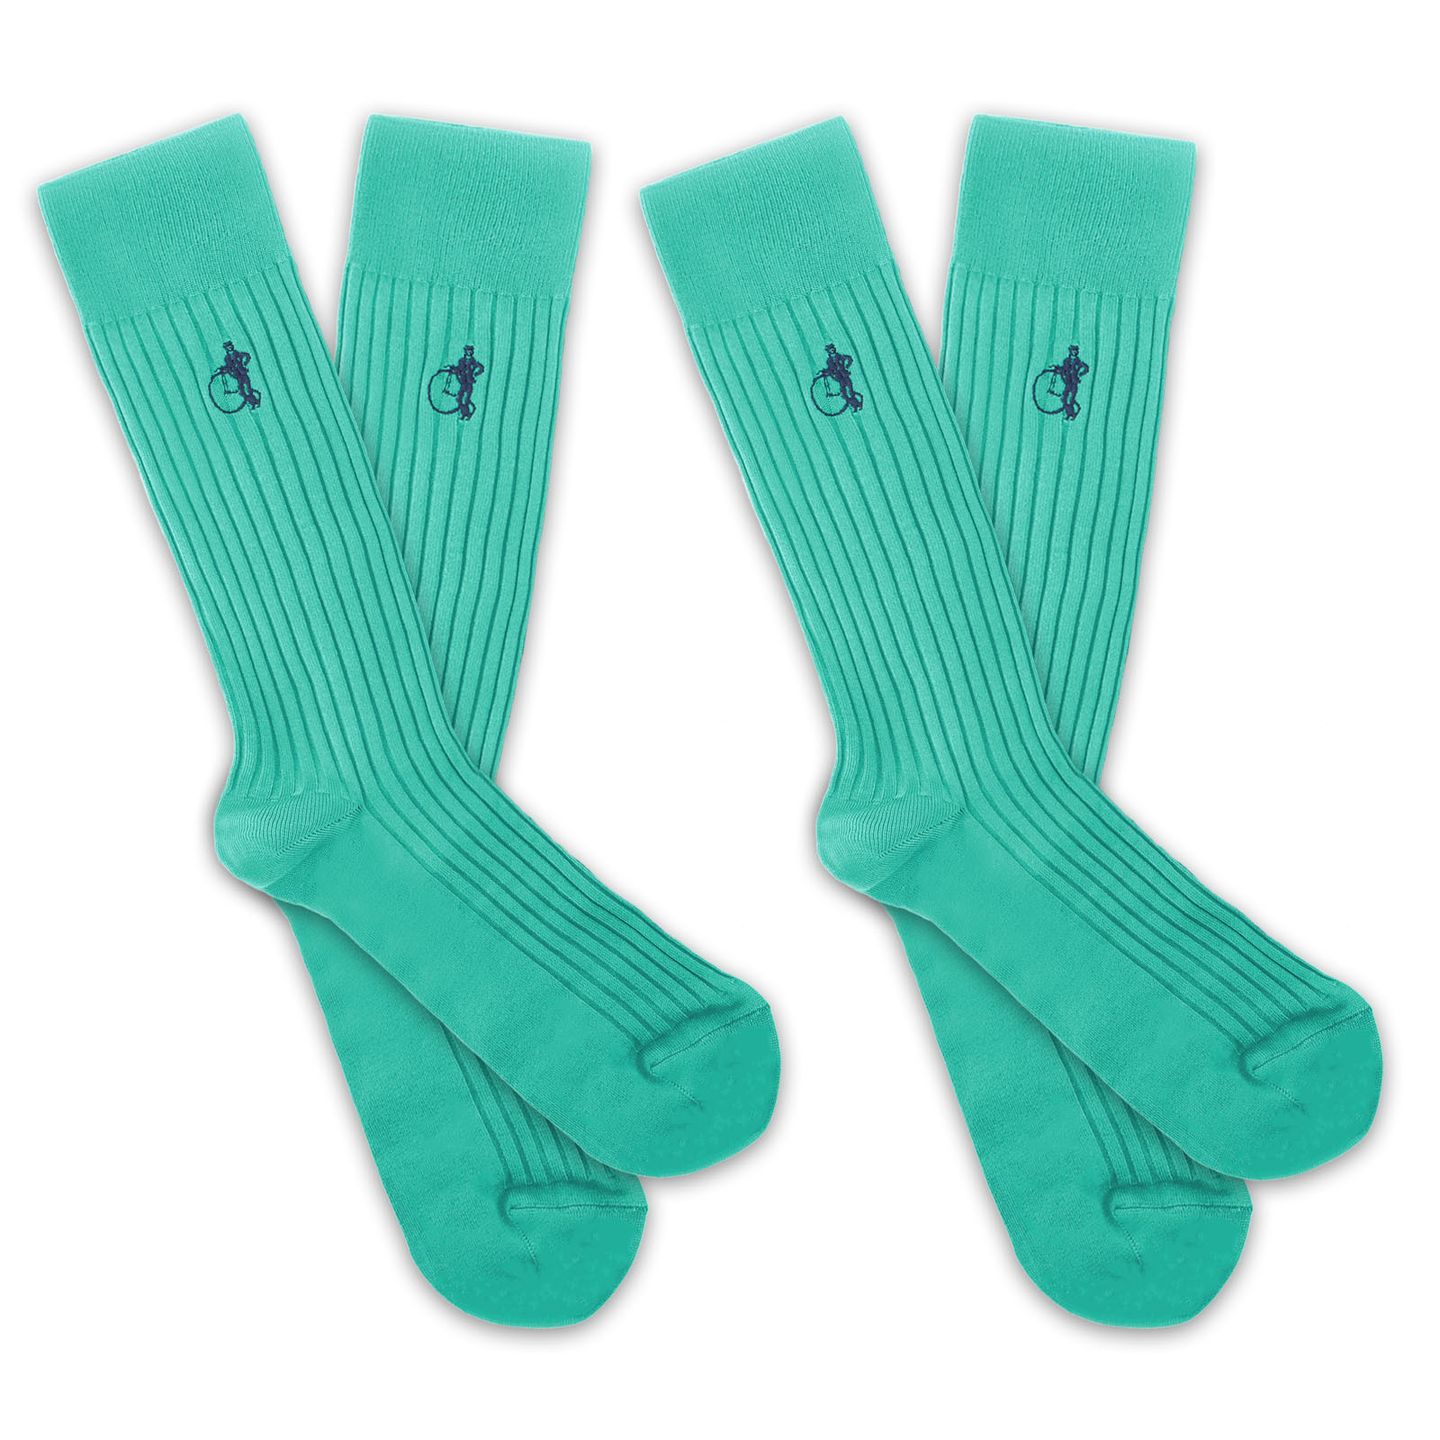 2 pairs of aqua simply sartorial socks for men